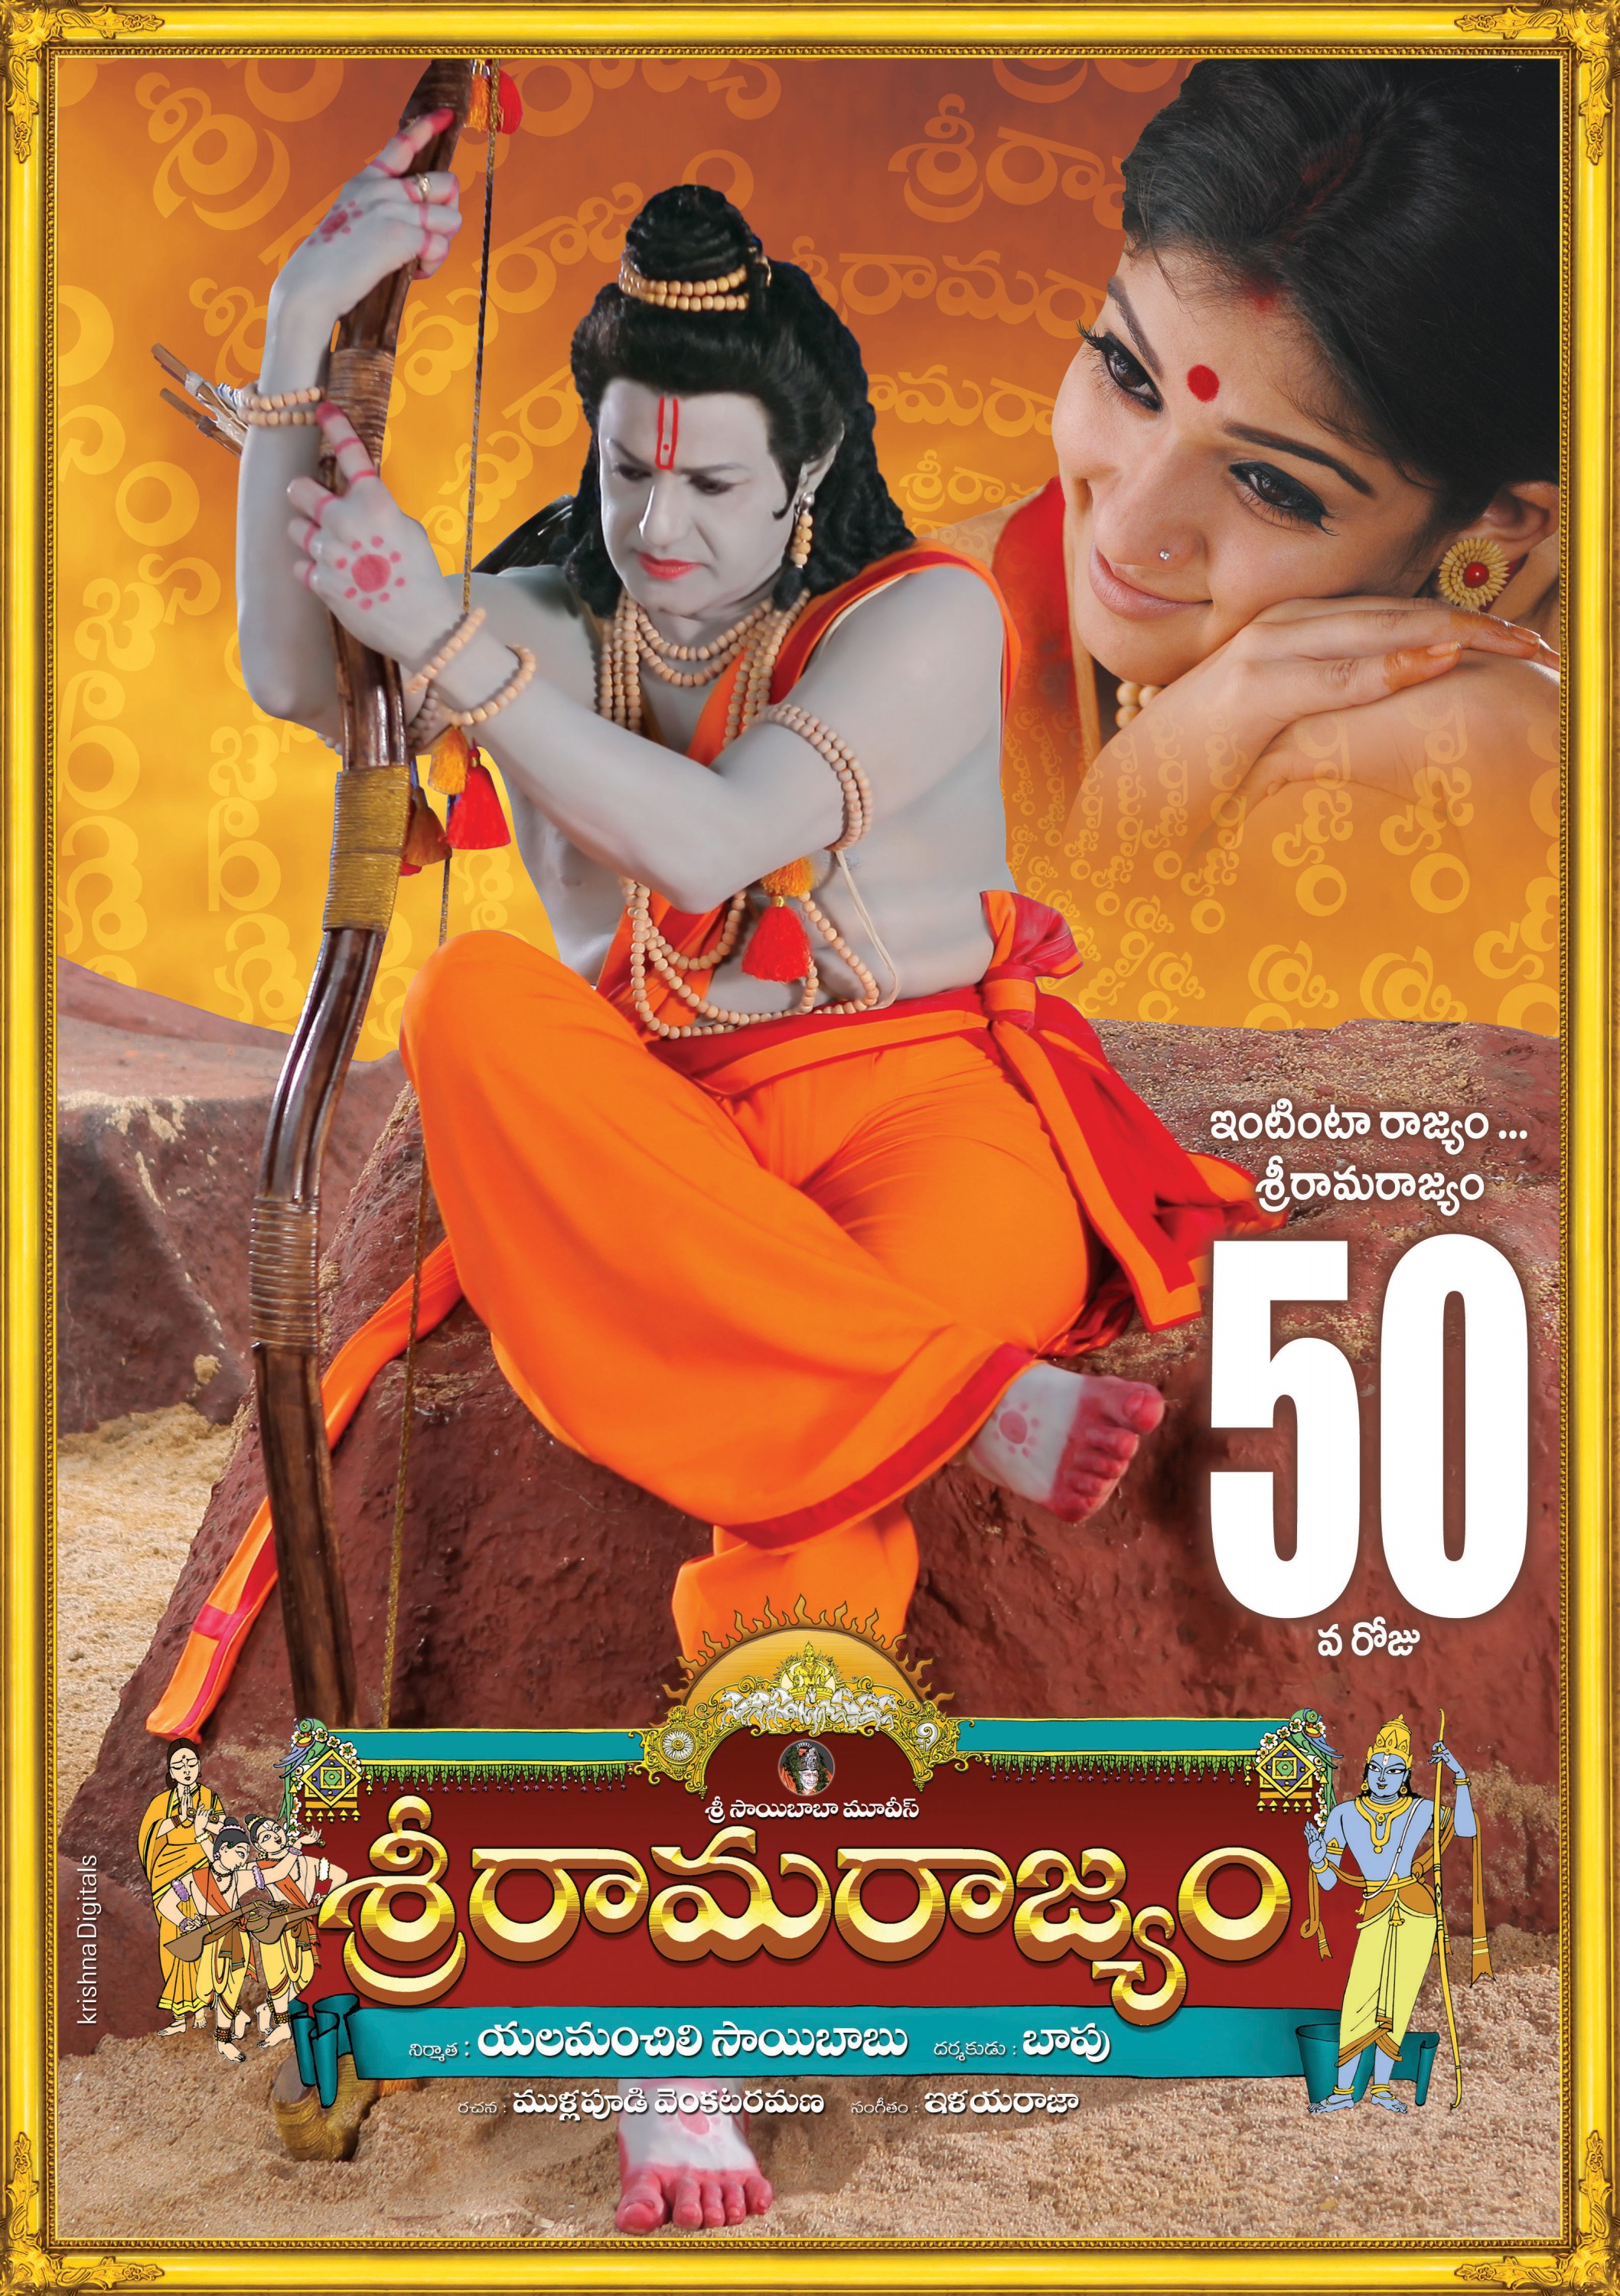 Mega Sized Movie Poster Image for Sri Rama Rajyam (#10 of 10)